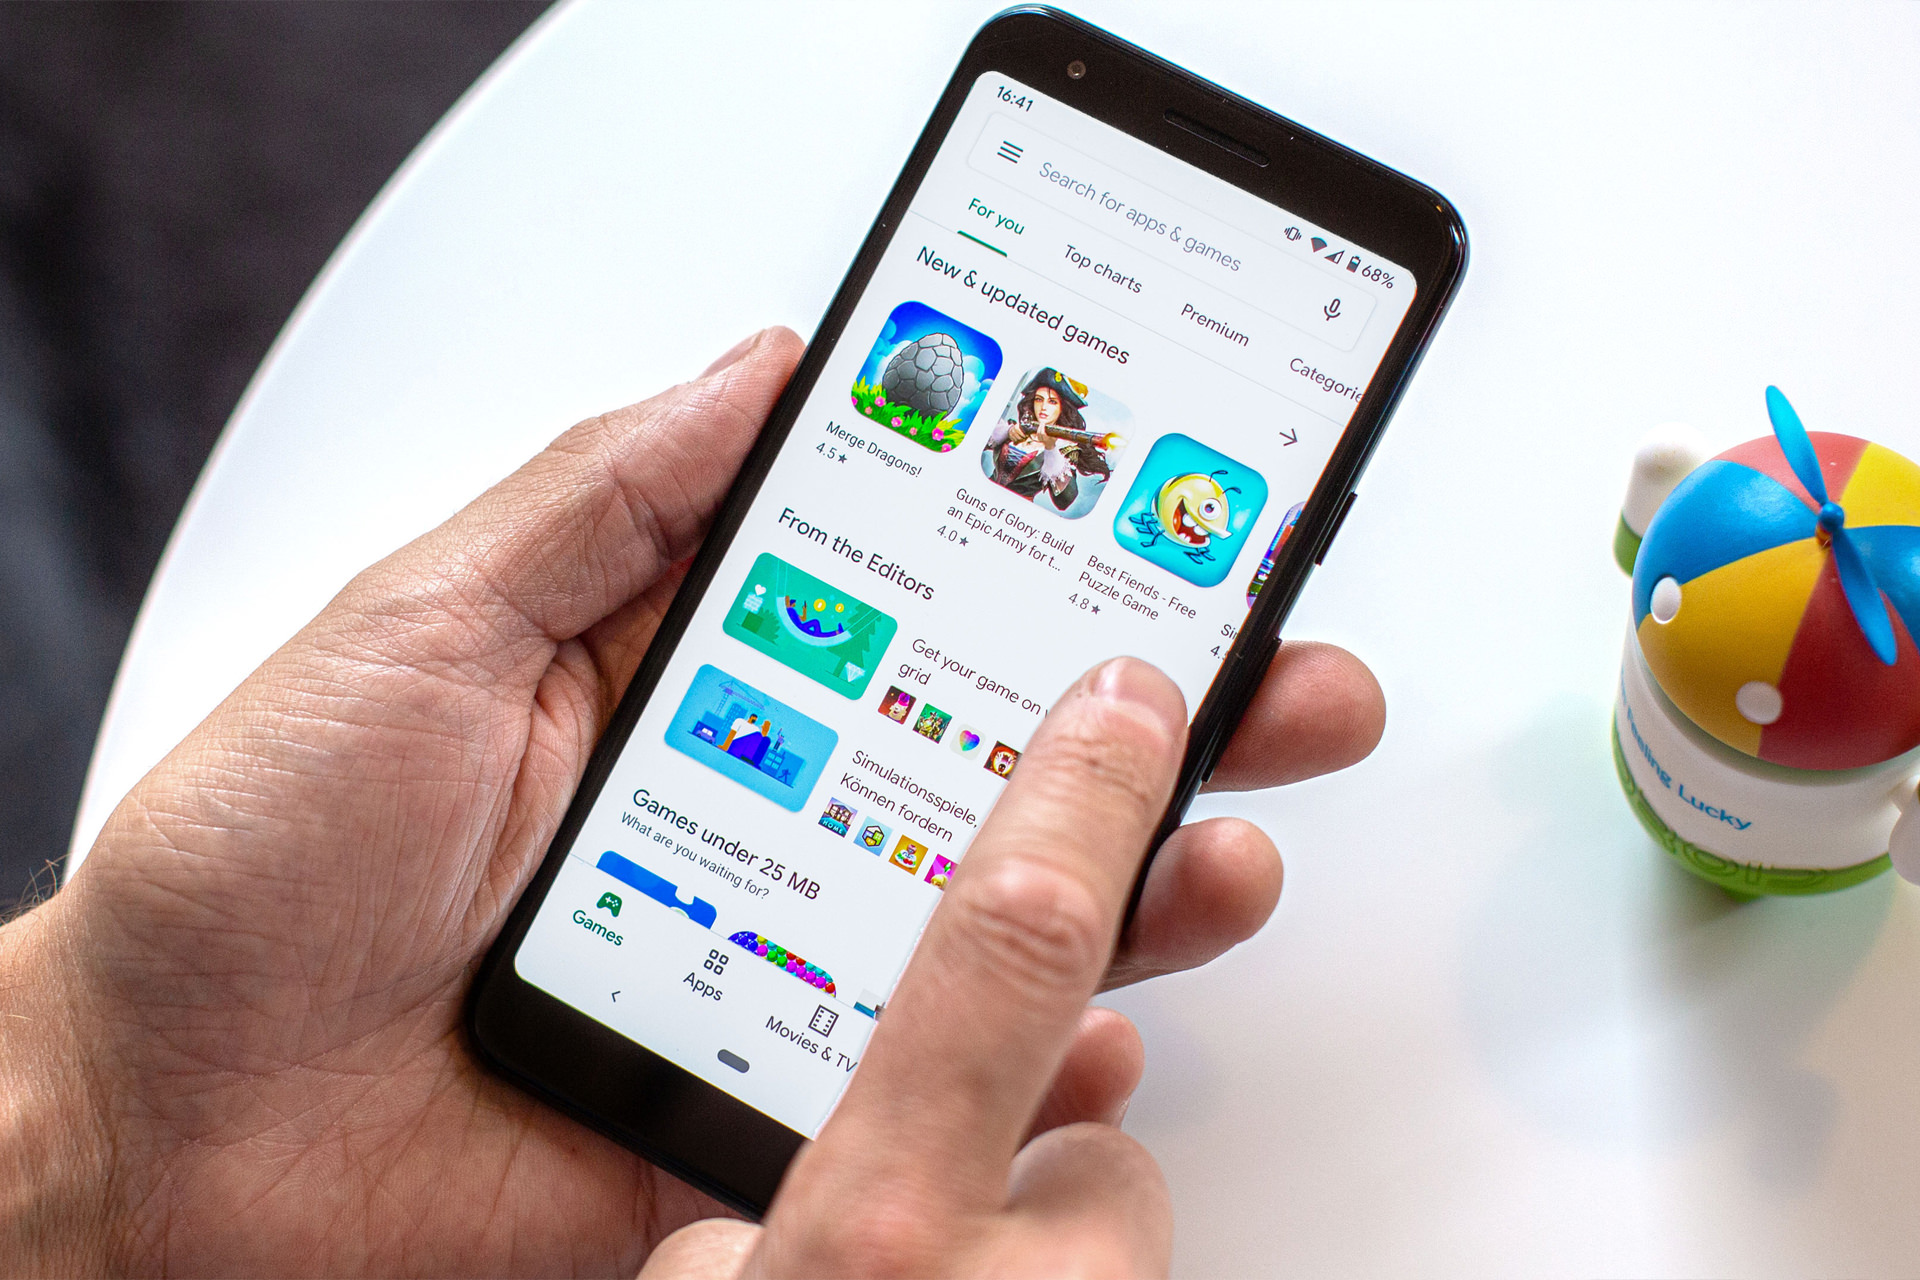 گوشی پیکسل گوگل / Google Pixel در حال اجرای پلی استور / Play Store در دست